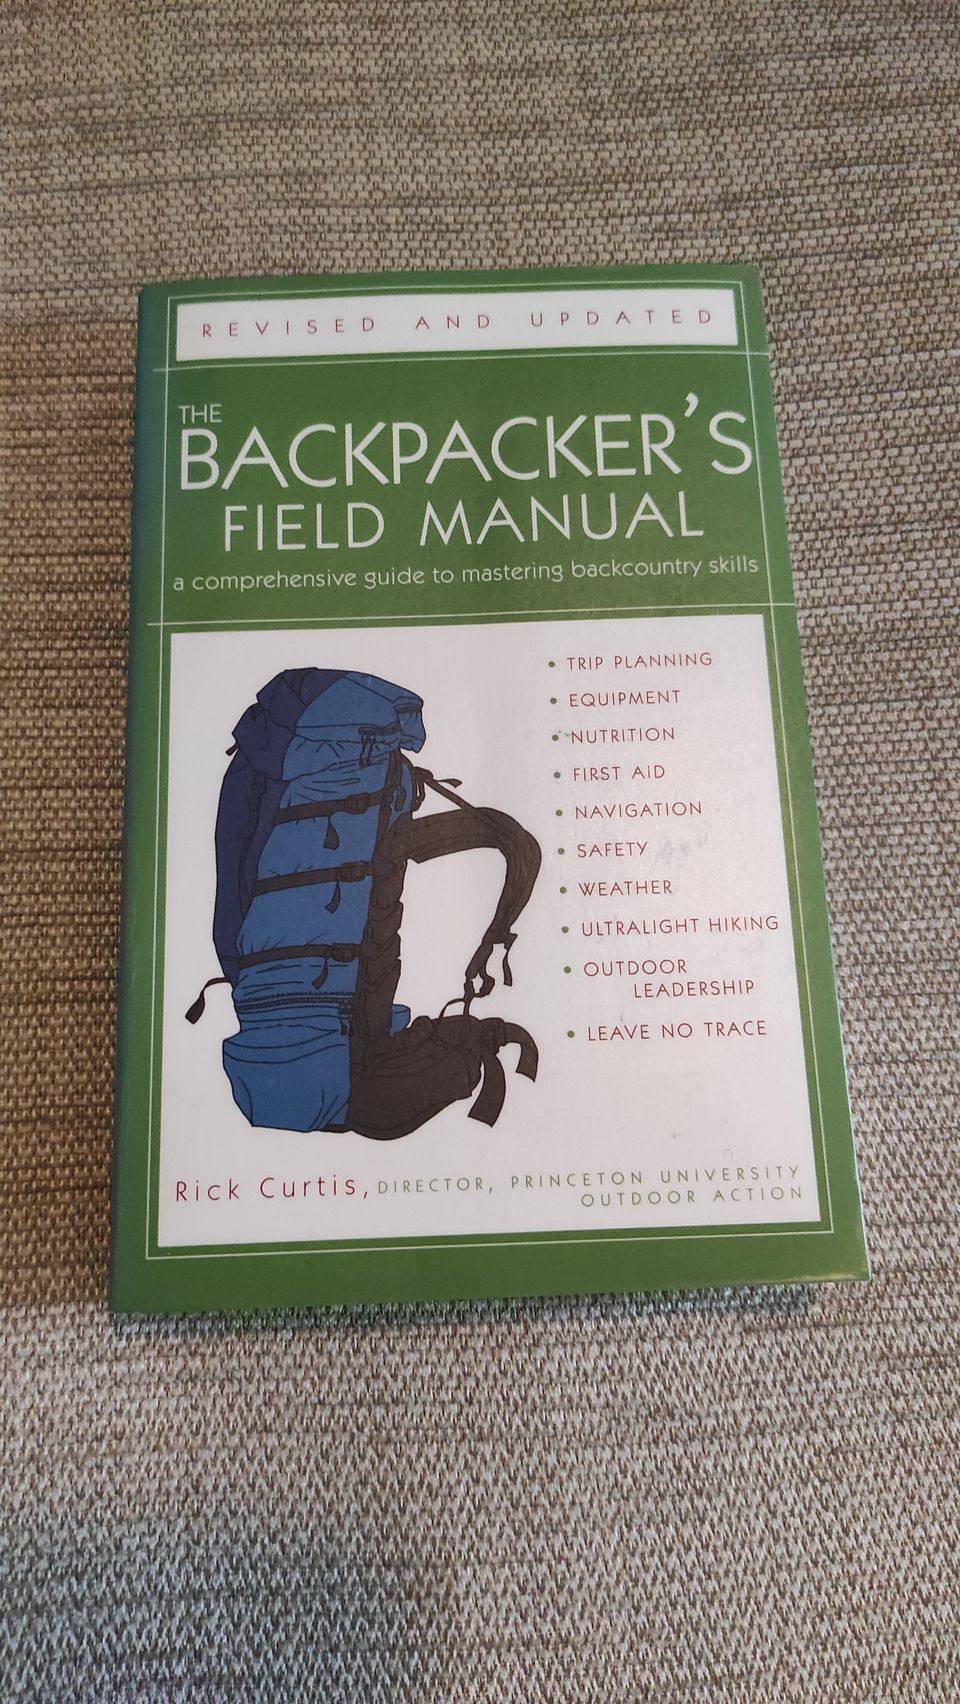 Backpacker's field manual